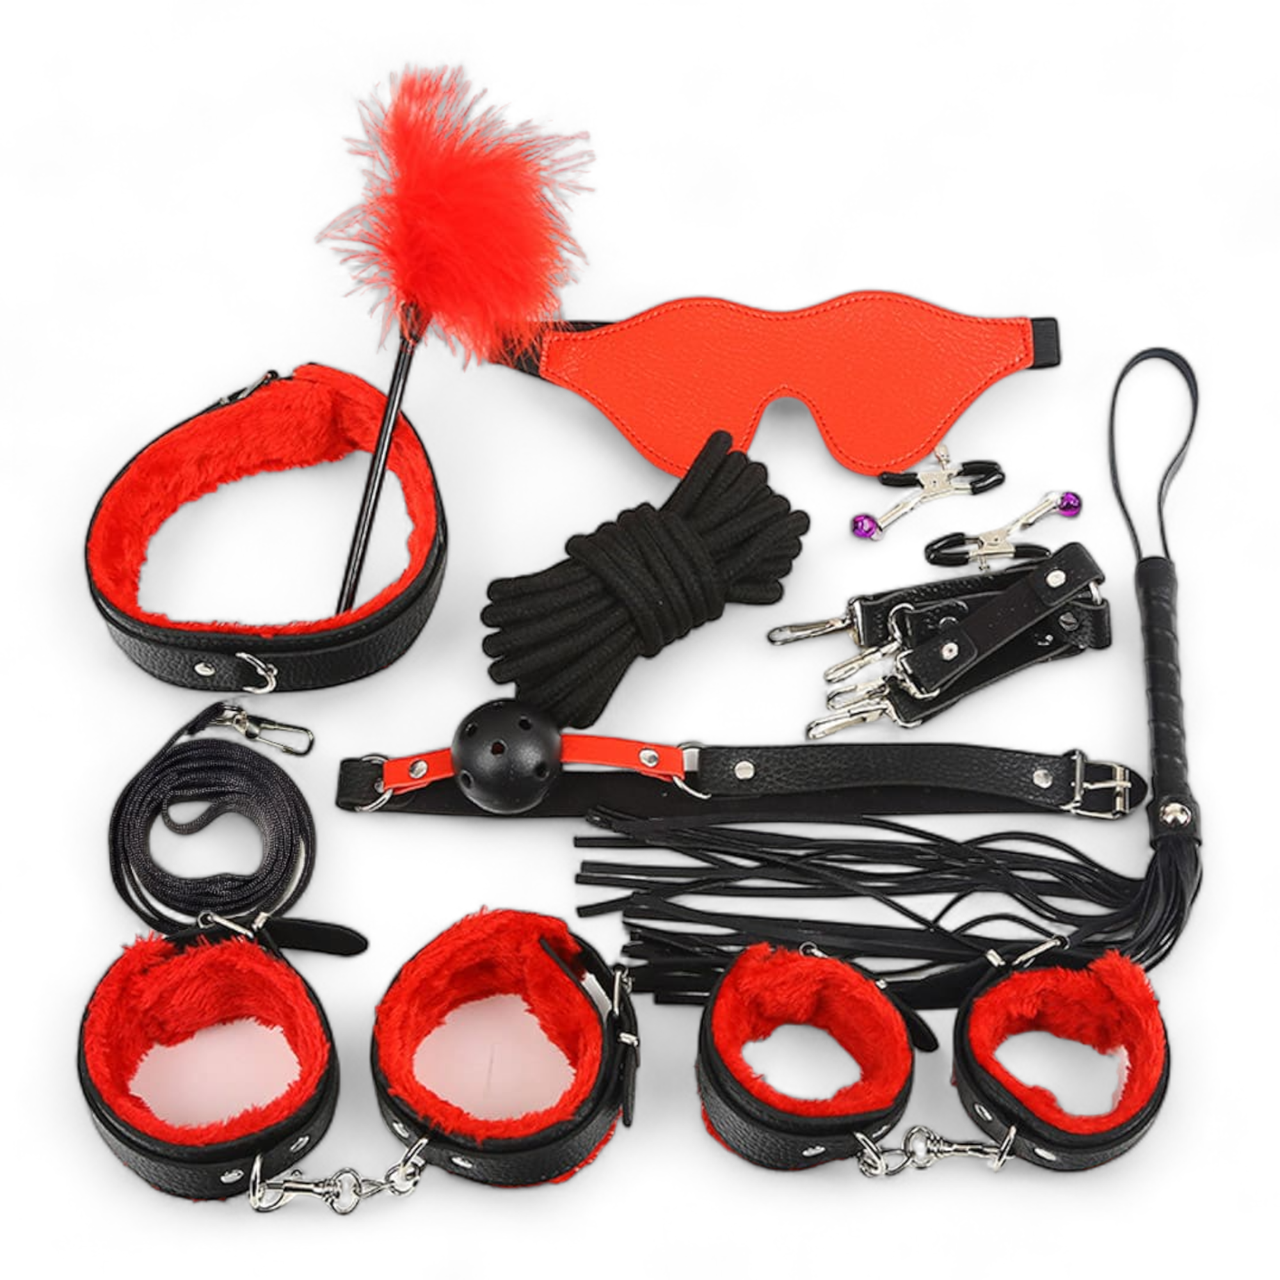 БДСМ набір 10 різних садо-мазо аксесуарів для рольових BDSM ігор та бондажу чорно-червоного кольору